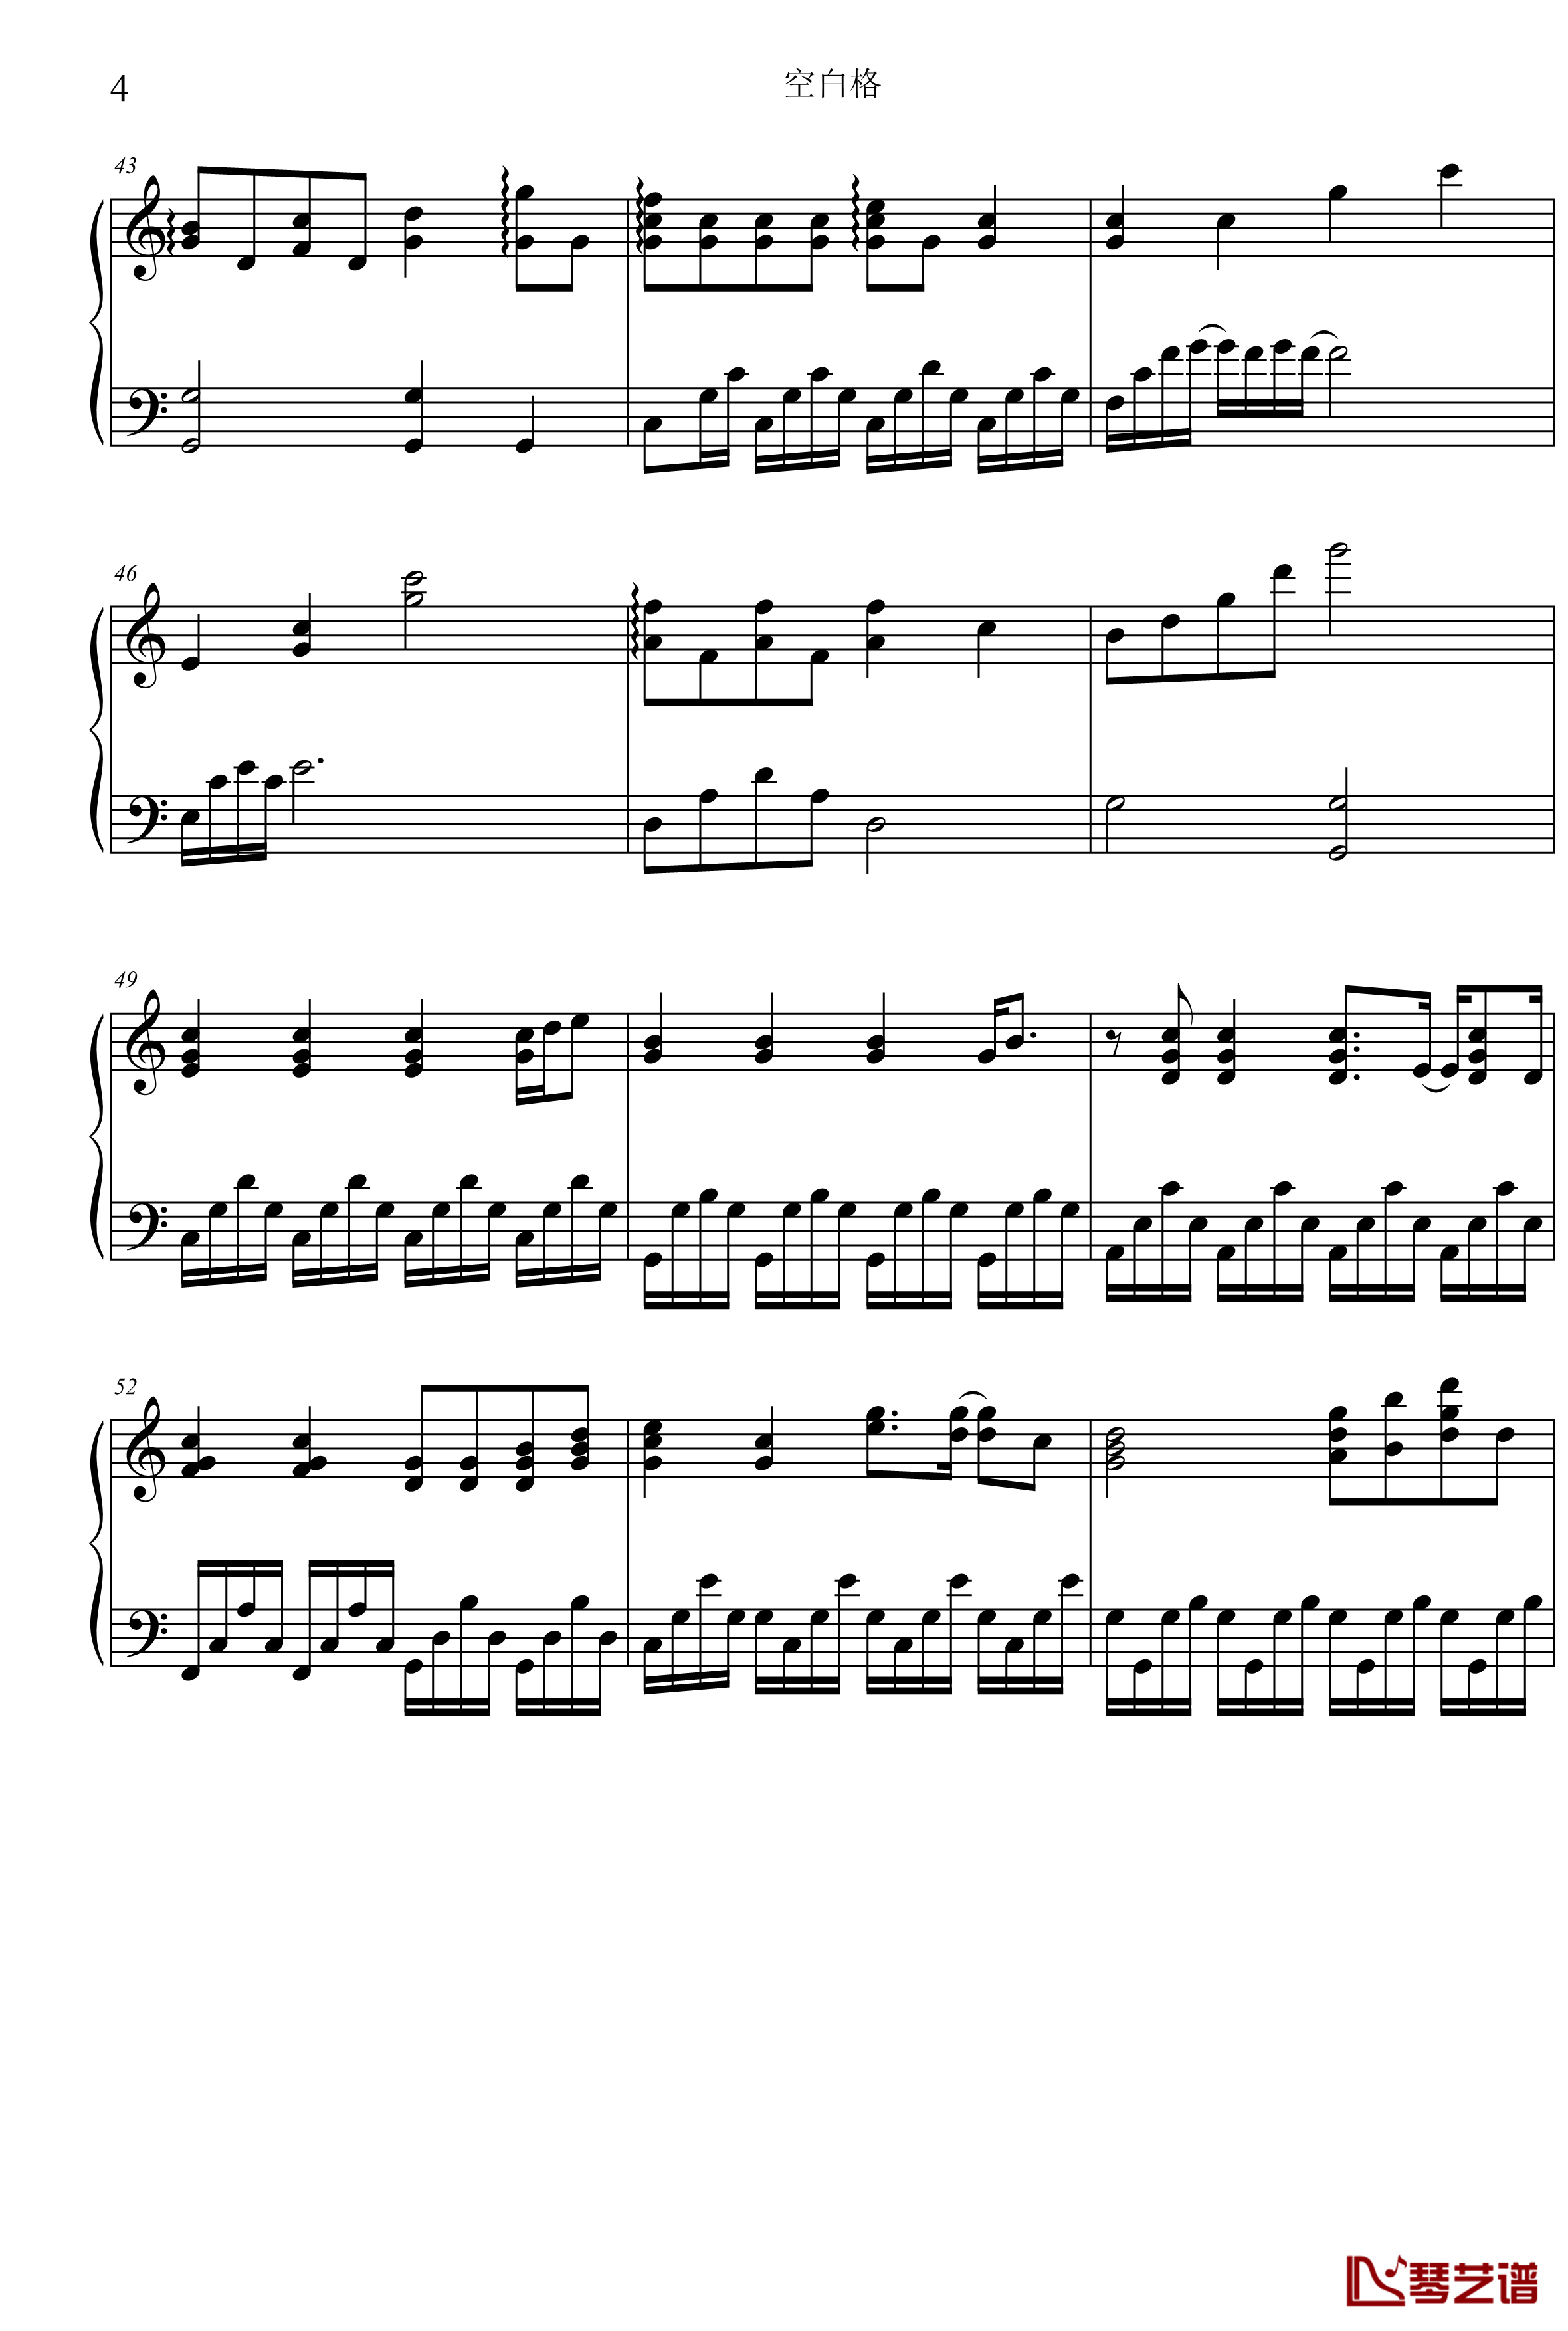 空白格钢琴谱-C调版本-蔡健雅4